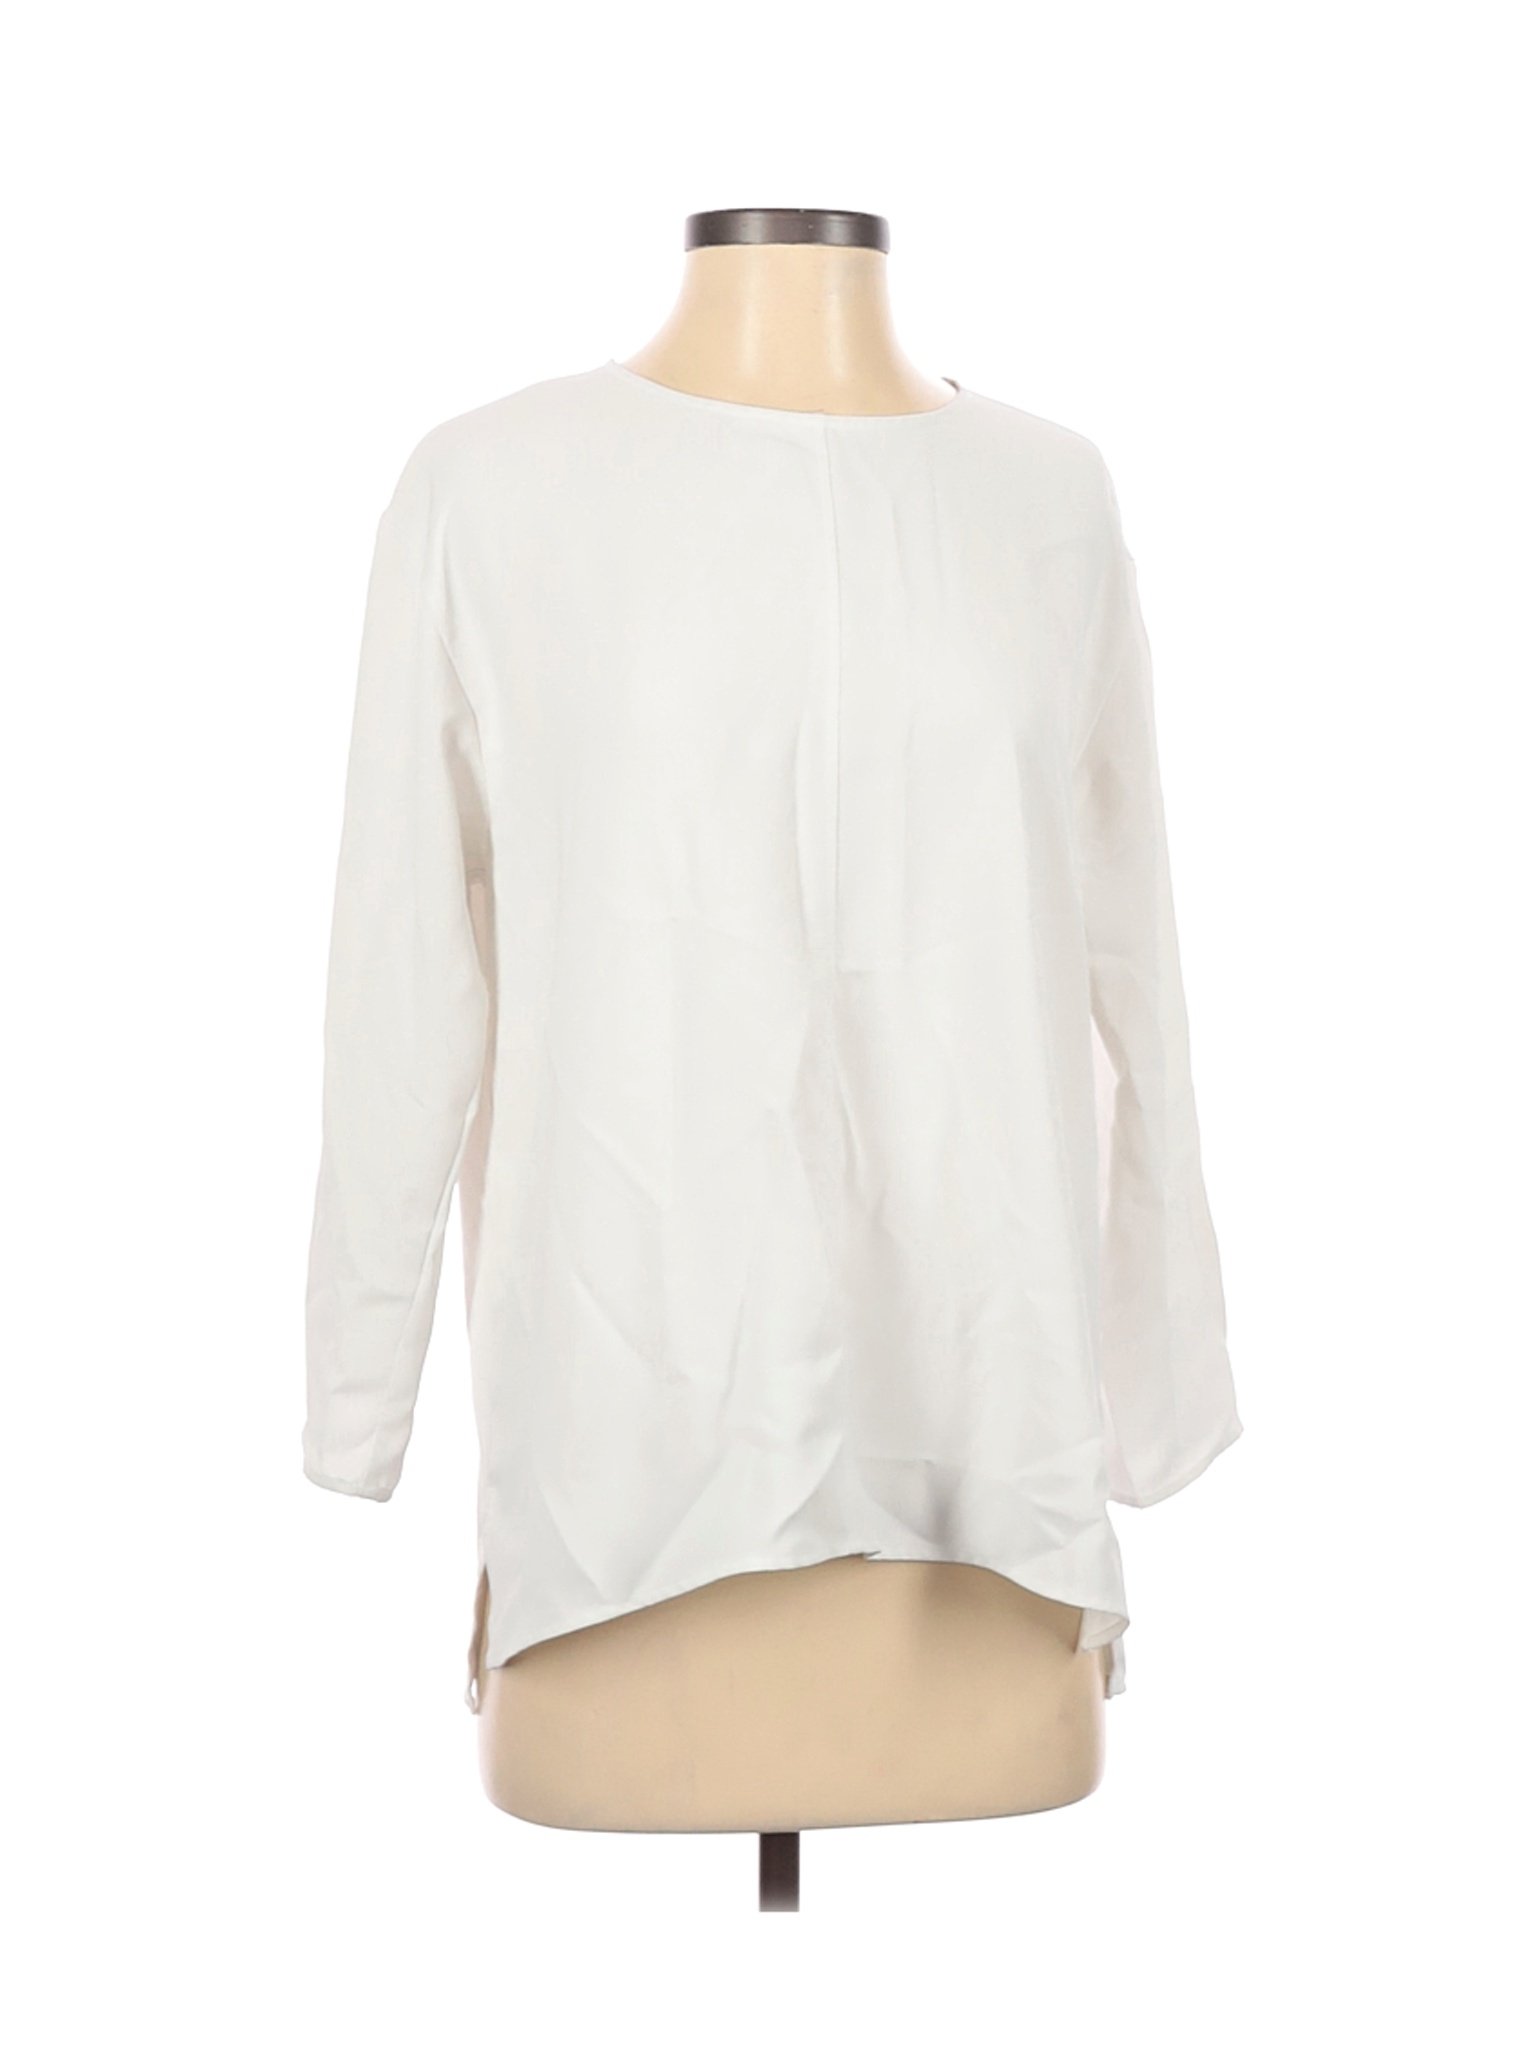 Uniqlo Women White 3/4 Sleeve Blouse M | eBay